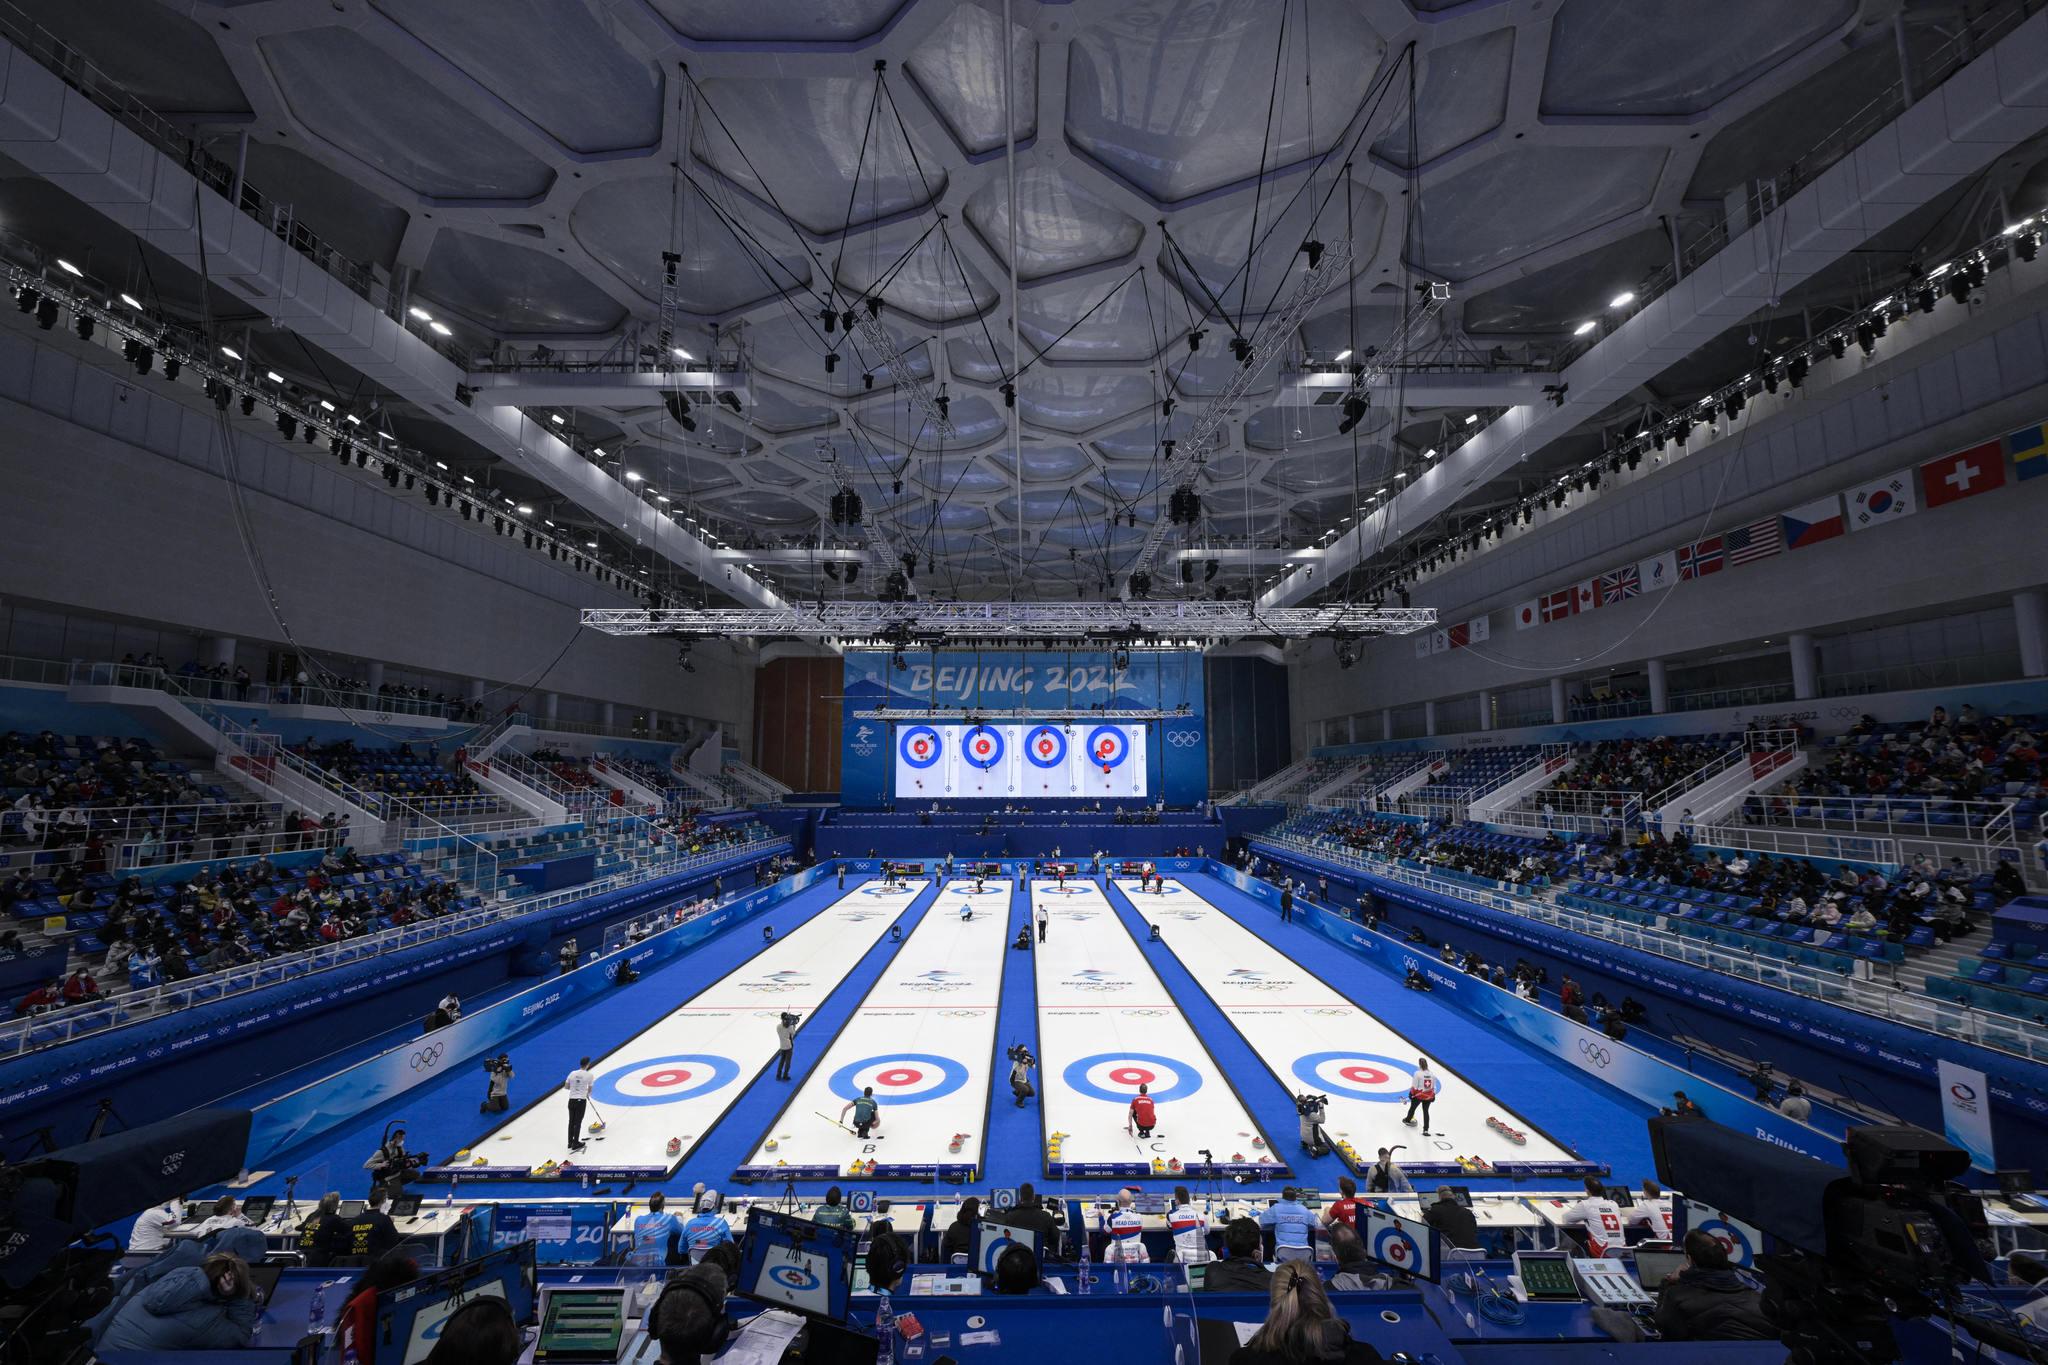 Jogos Olímpicos de Inverno Beijing 2022